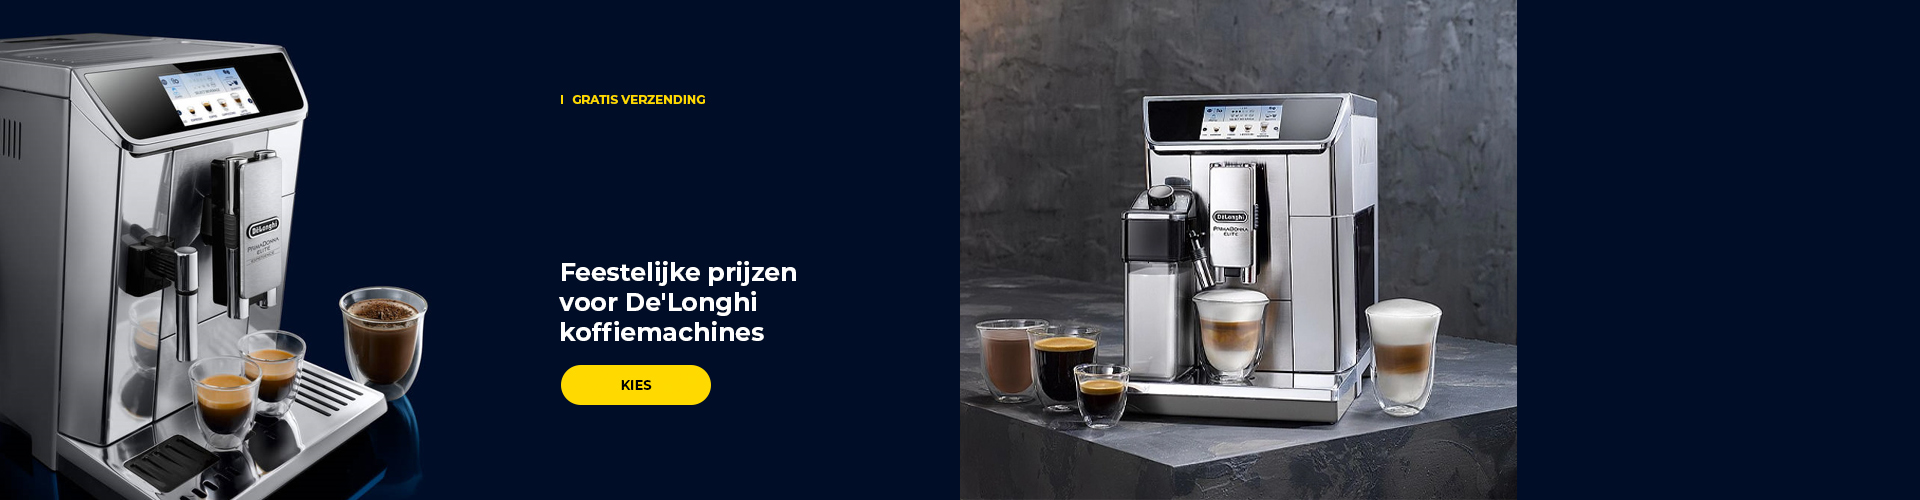 Feestelijke prijzen voor De'Longhi koffiemachines